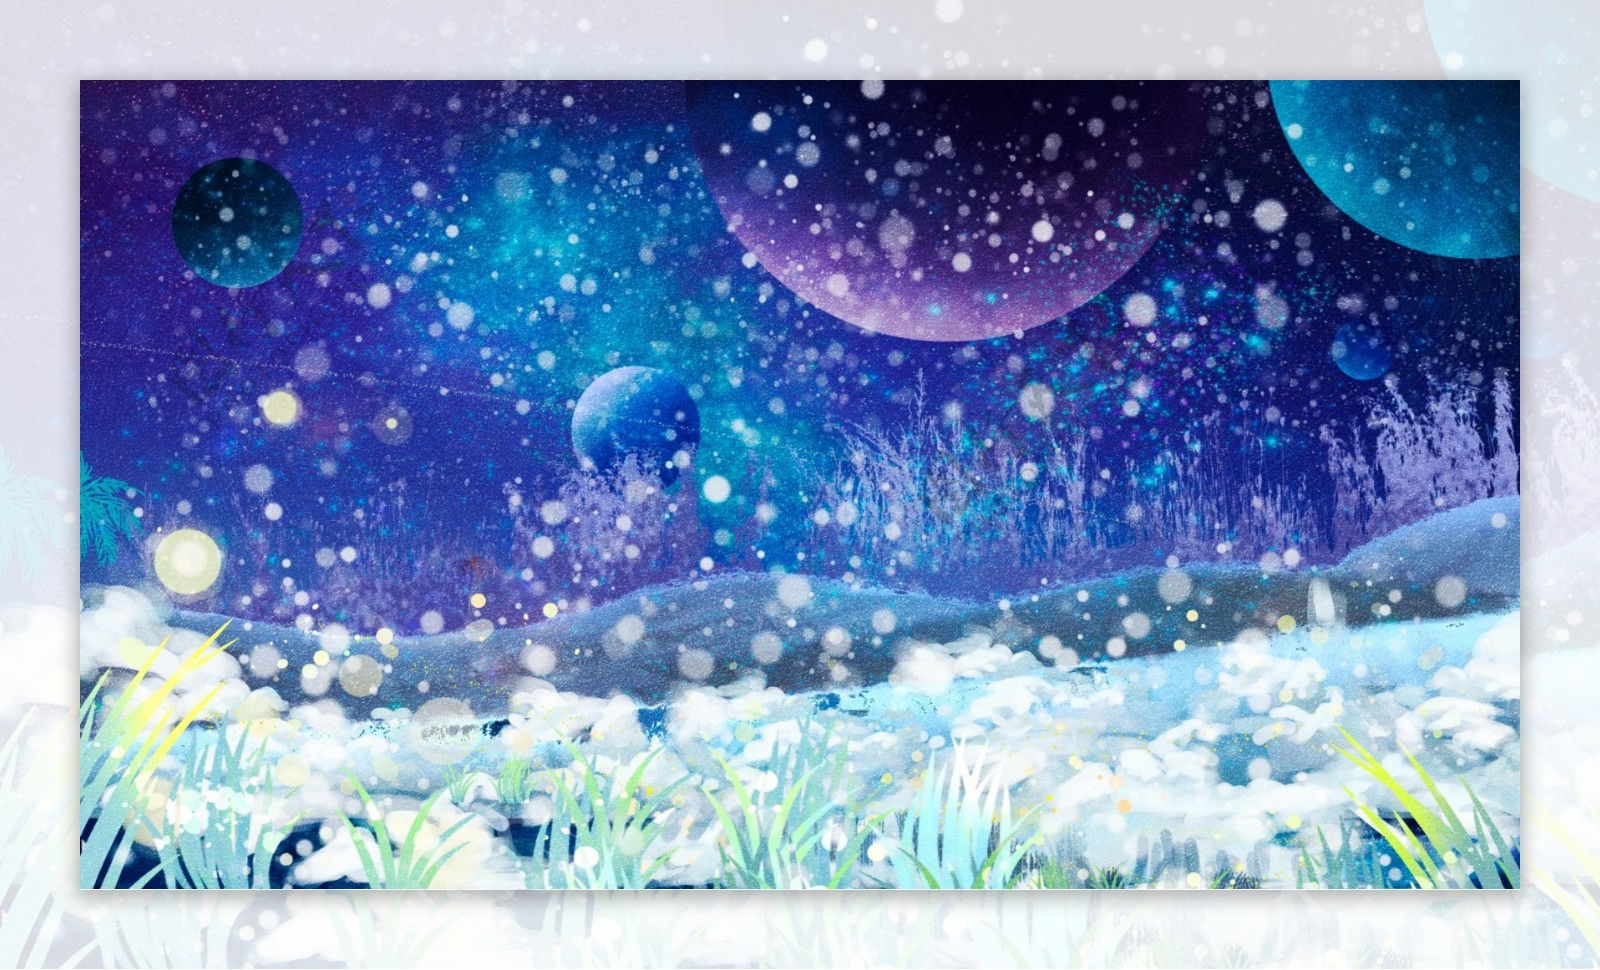 童话风奇幻星空雪地背景设计